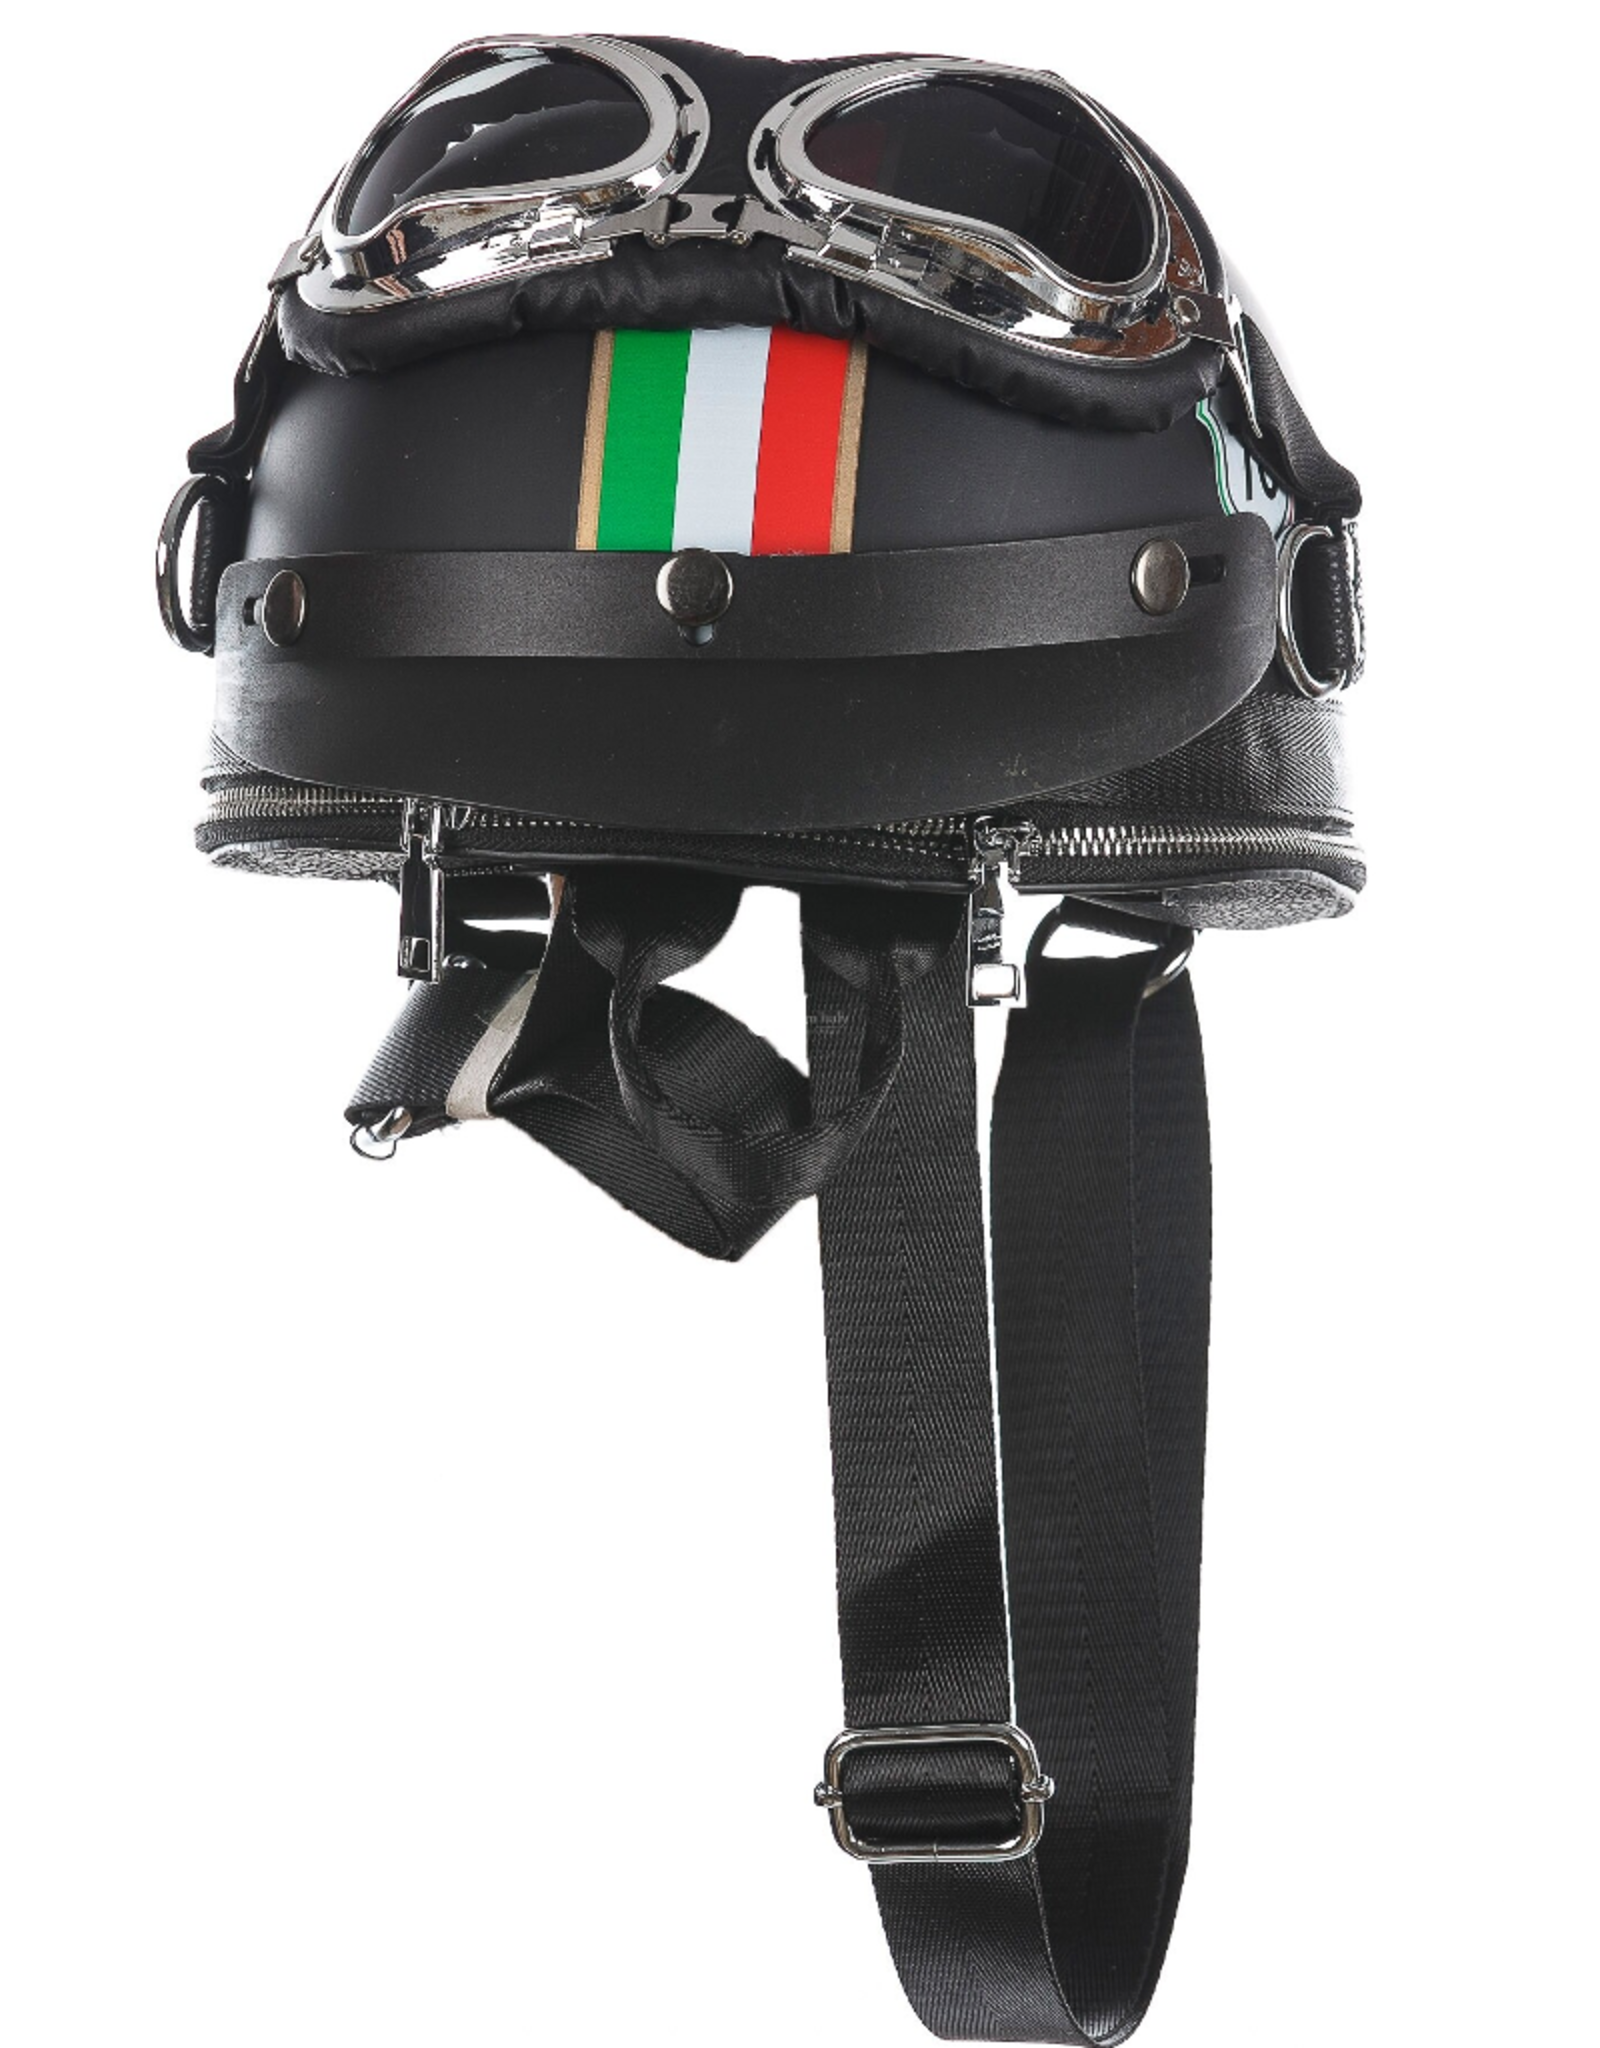 Magic Bags Fantasy tassen en portemonnees - Motorhelm rugtas-schoudertas met Italiaanse Vlag